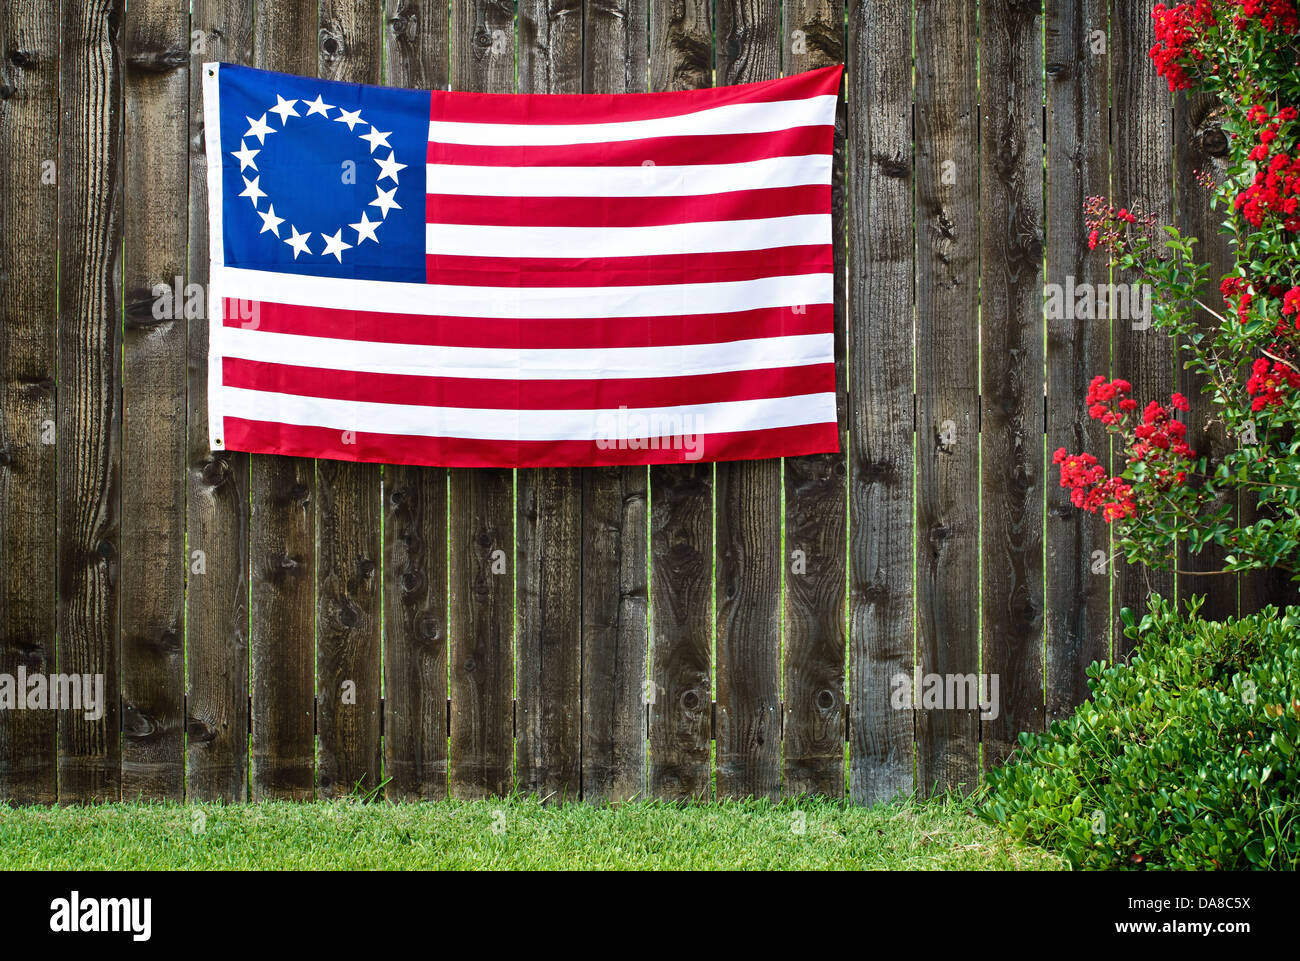 13 Sterne amerikanische Flagge, die Betsy Ross Flag auf rustikalen Holzzaun angezeigt Stockfoto